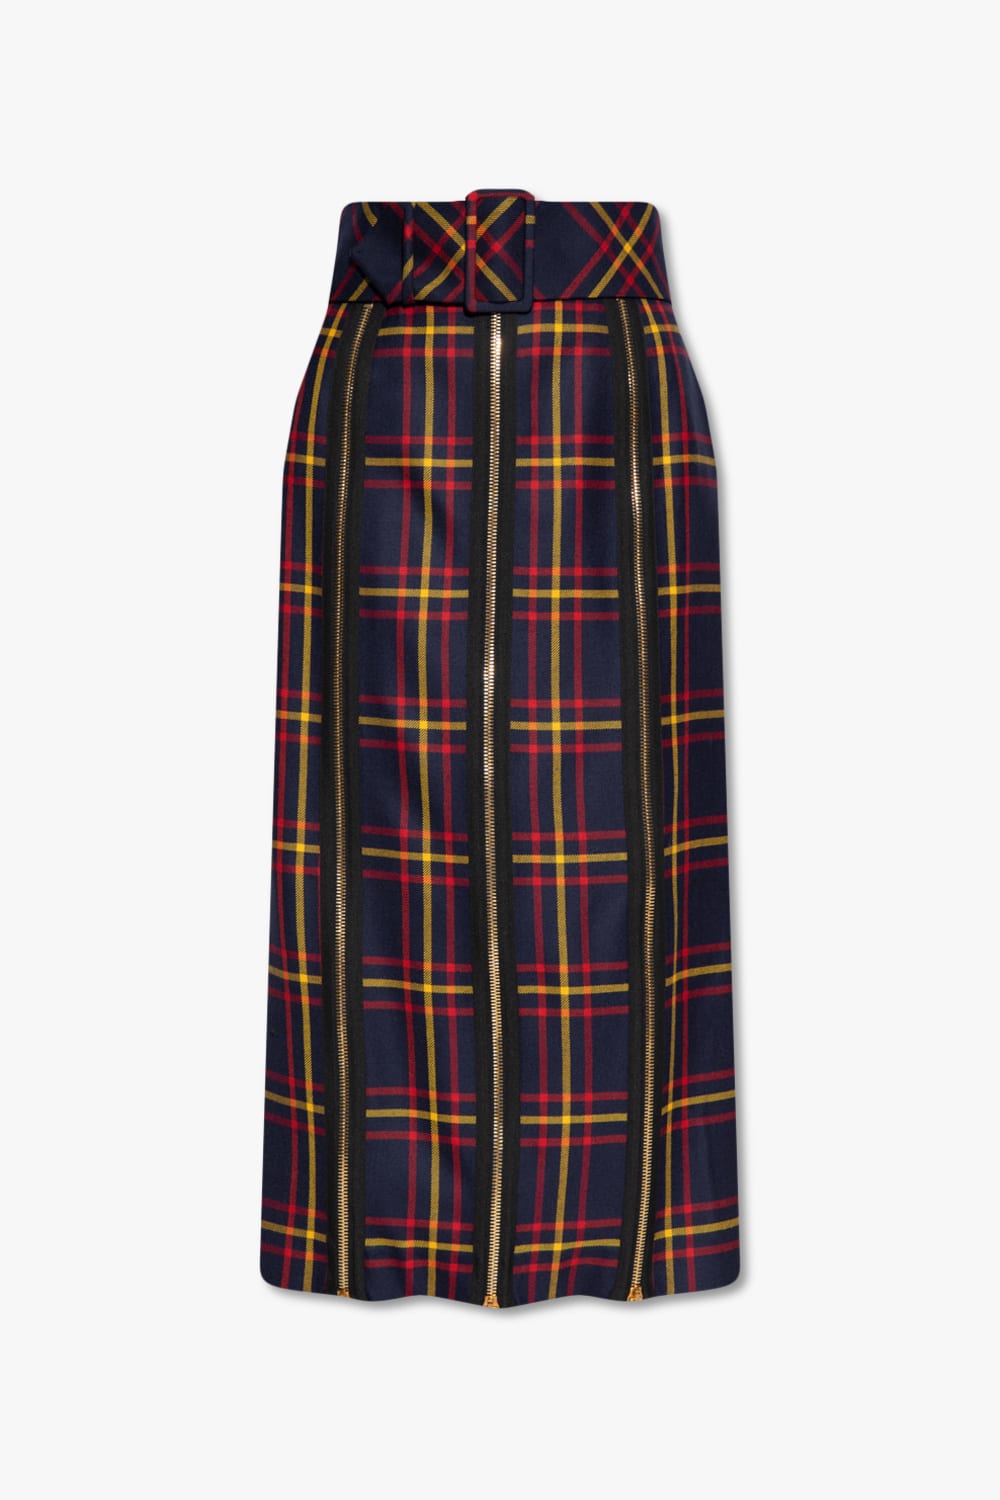 Gucci Tartan Wool Skirt